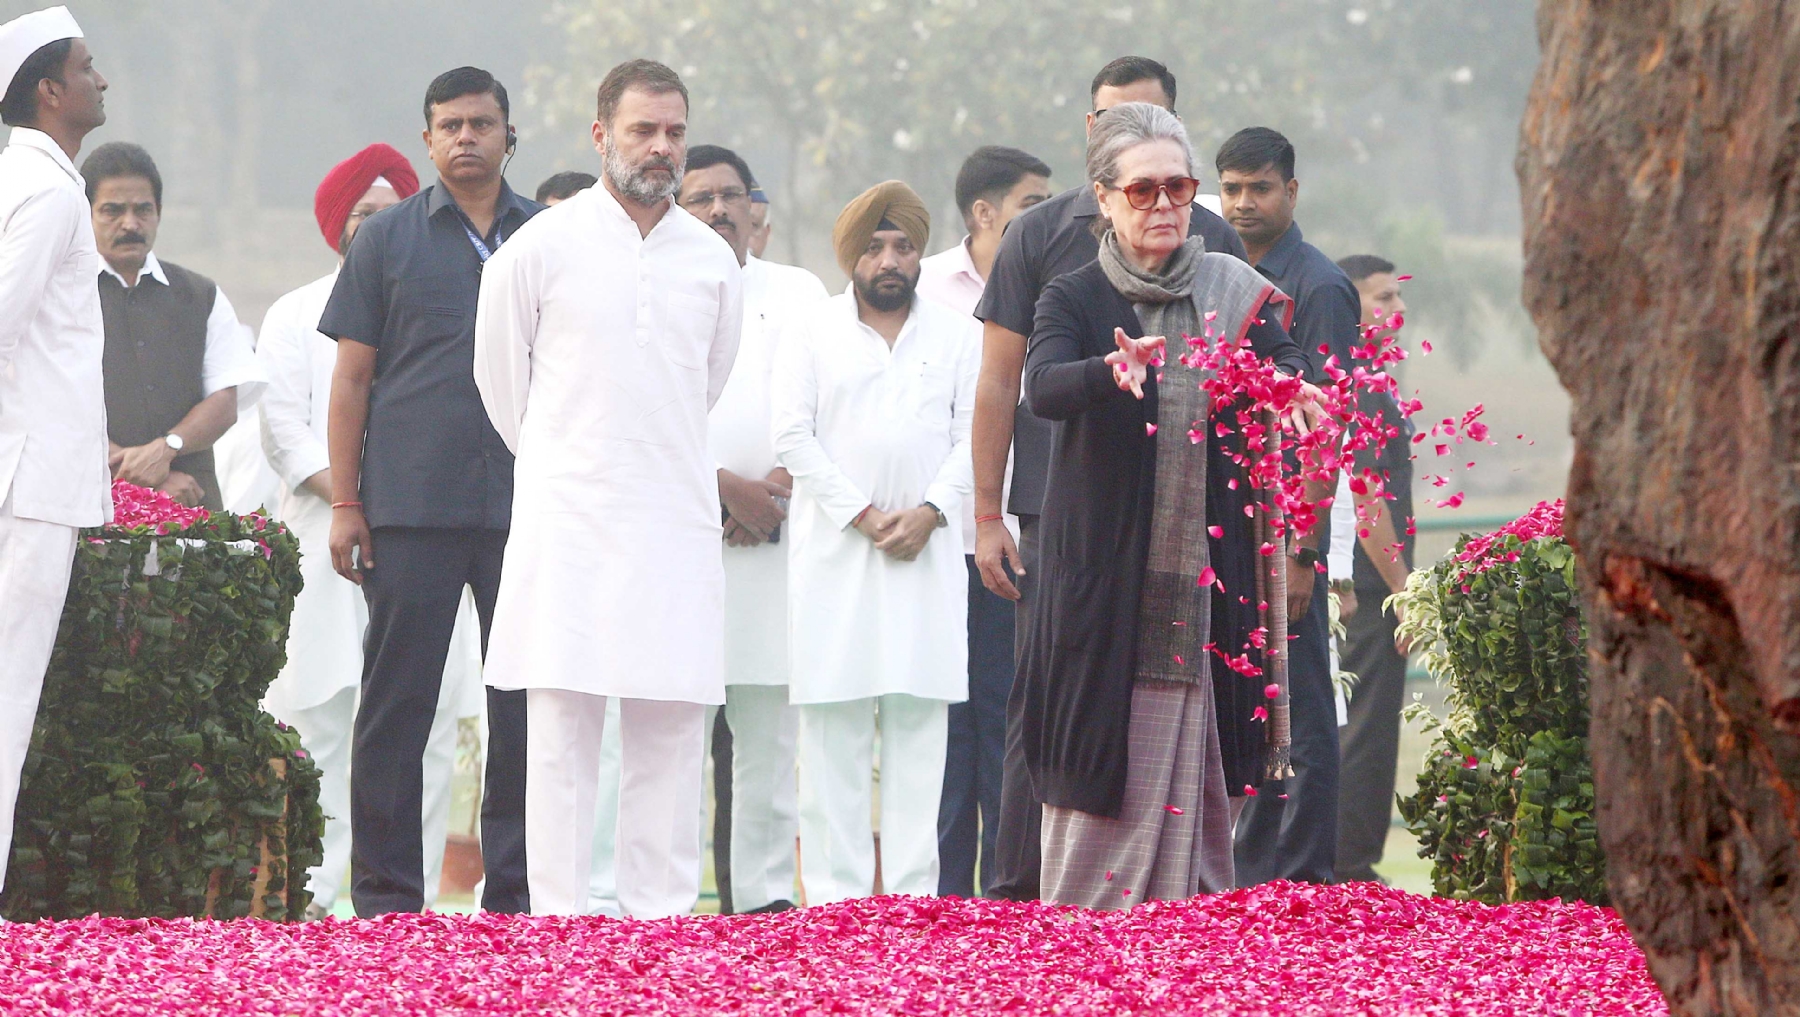 नई दिल्ली में मंगलवार 31 अक्टूबर को कांग्रेस अध्यक्ष मल्लिकार्जुन खरगे और सोनिया गांधी, राहुल गांधी ने पूर्व प्रधानमंत्री इंदिरा गांधी की 39वीं पुण्यतिथि पर पुष्पांजलि अर्पित करते हुए। हिन्दुस्थान समाचार/ फोटो गणेश बिष्ट